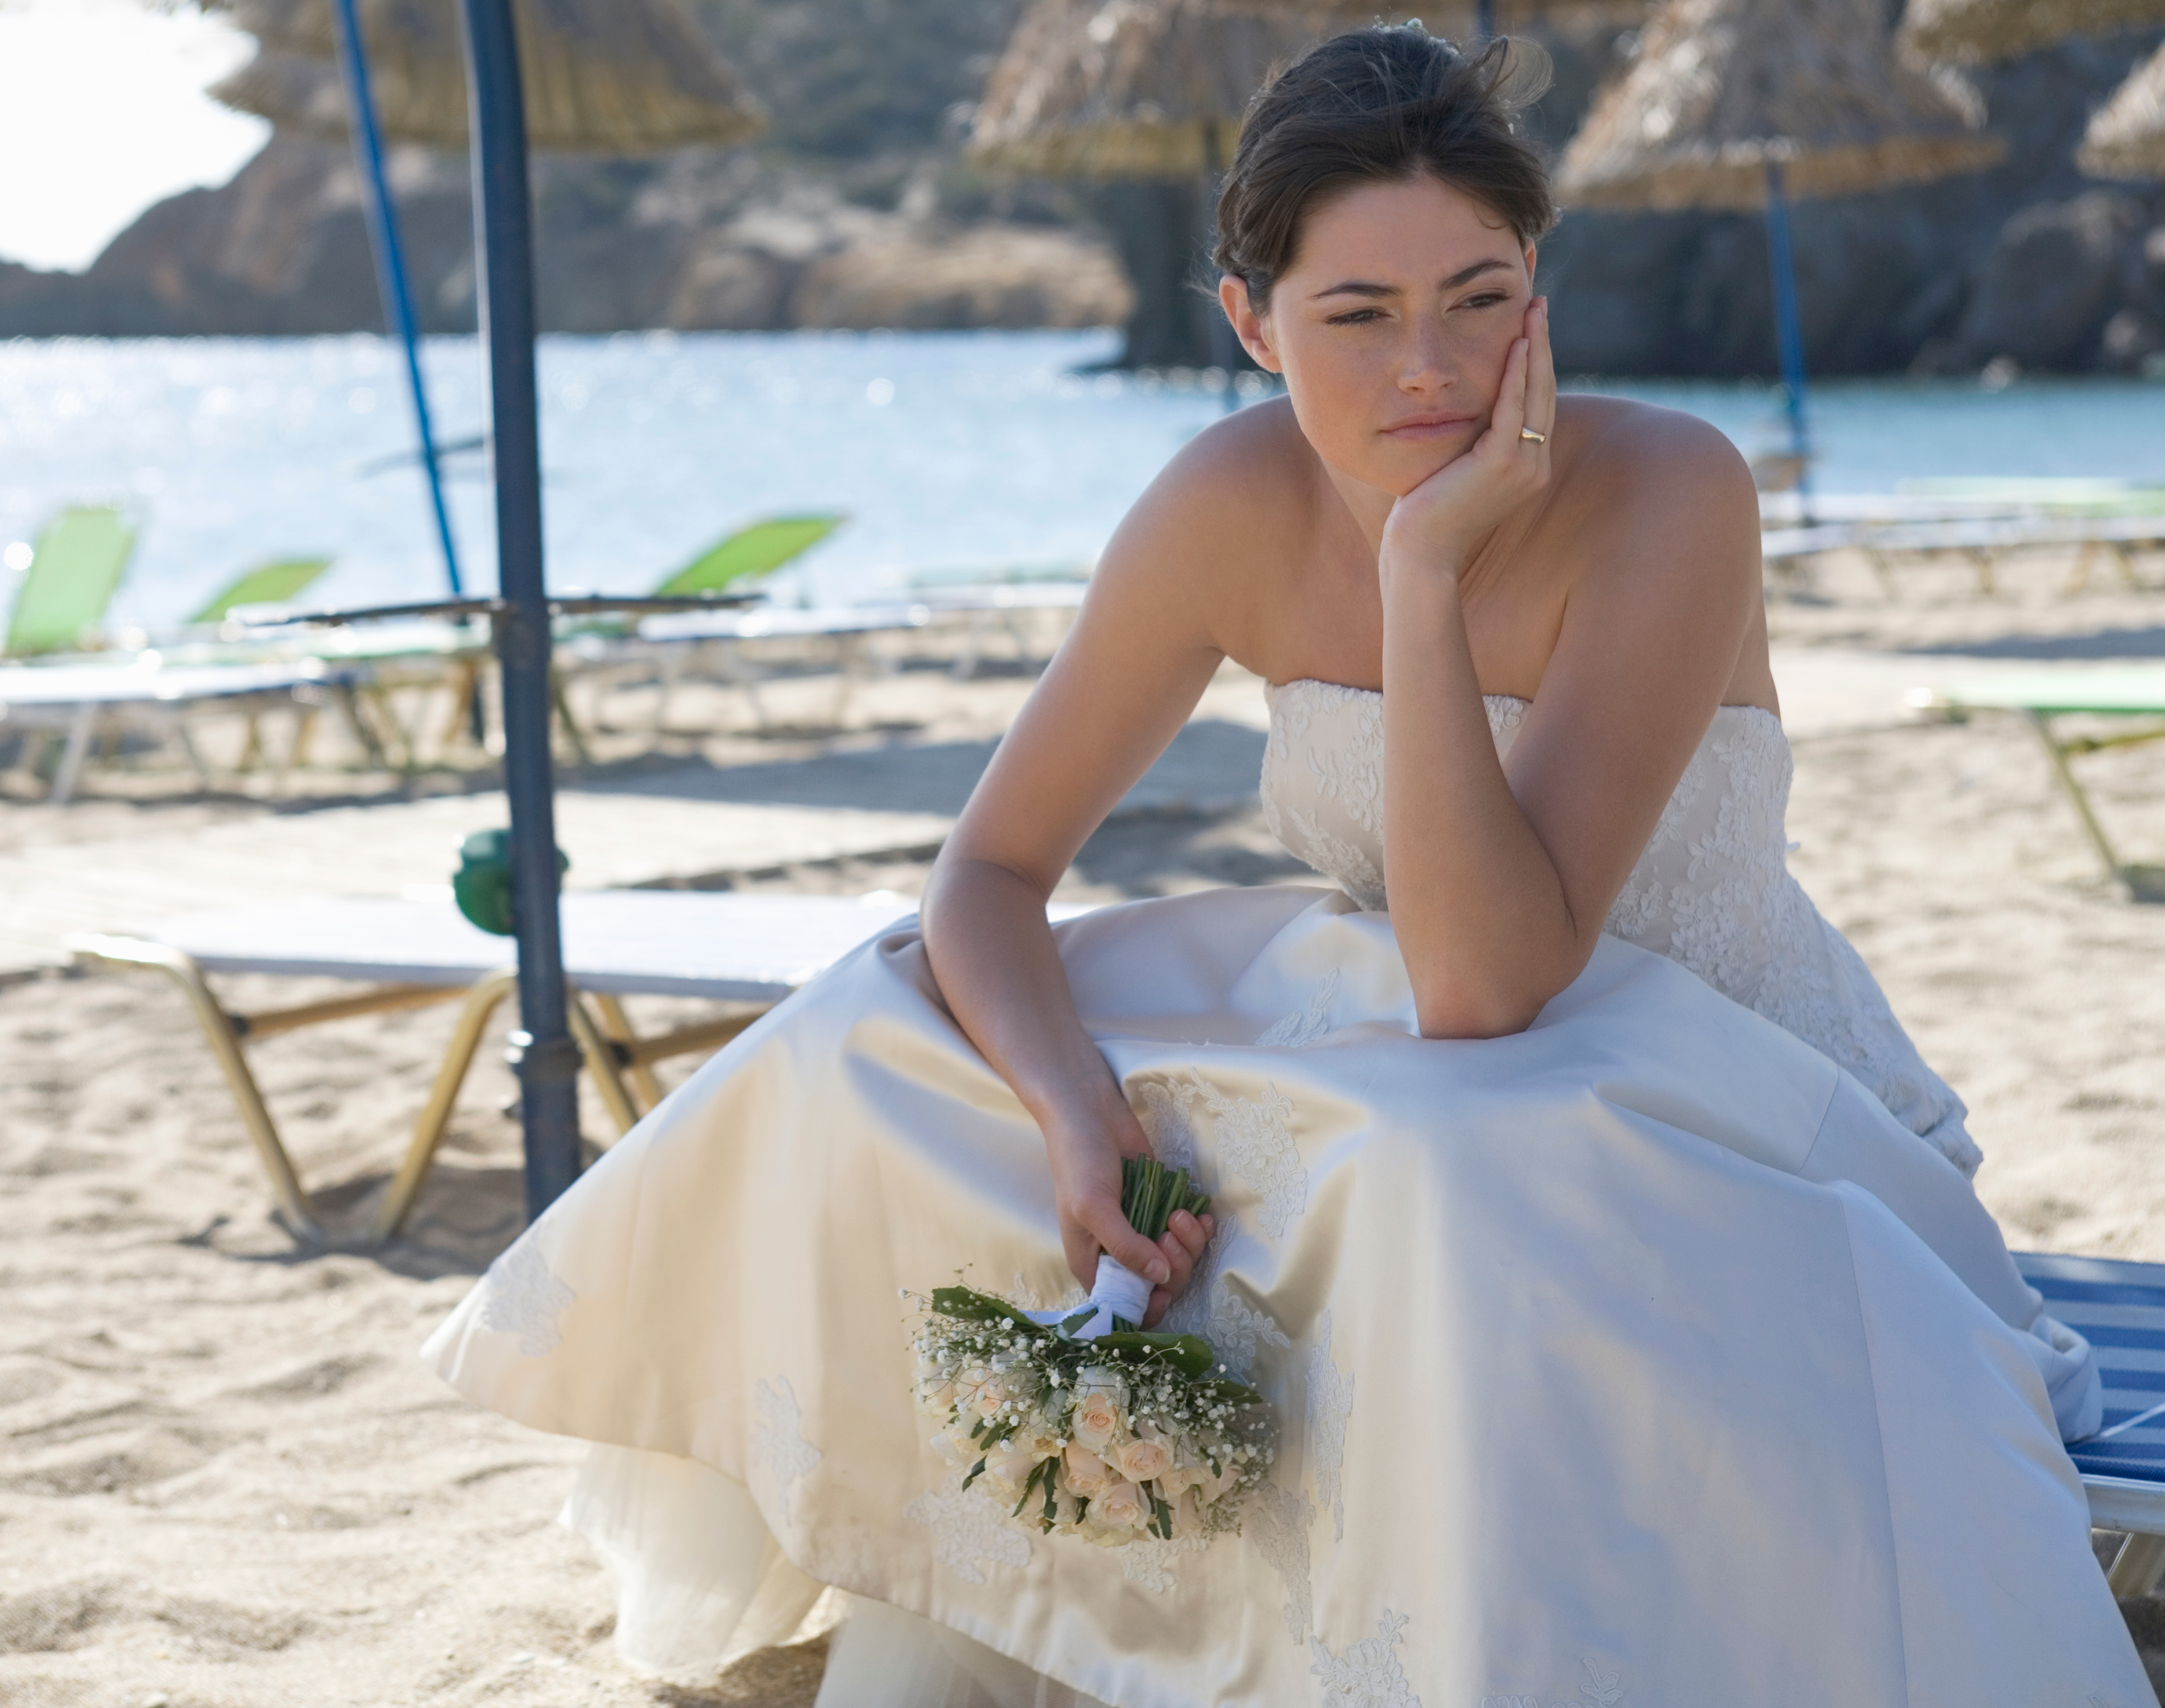 Une mariée malheureuse est photographiée assise sur une plage | Source : Shutterstock